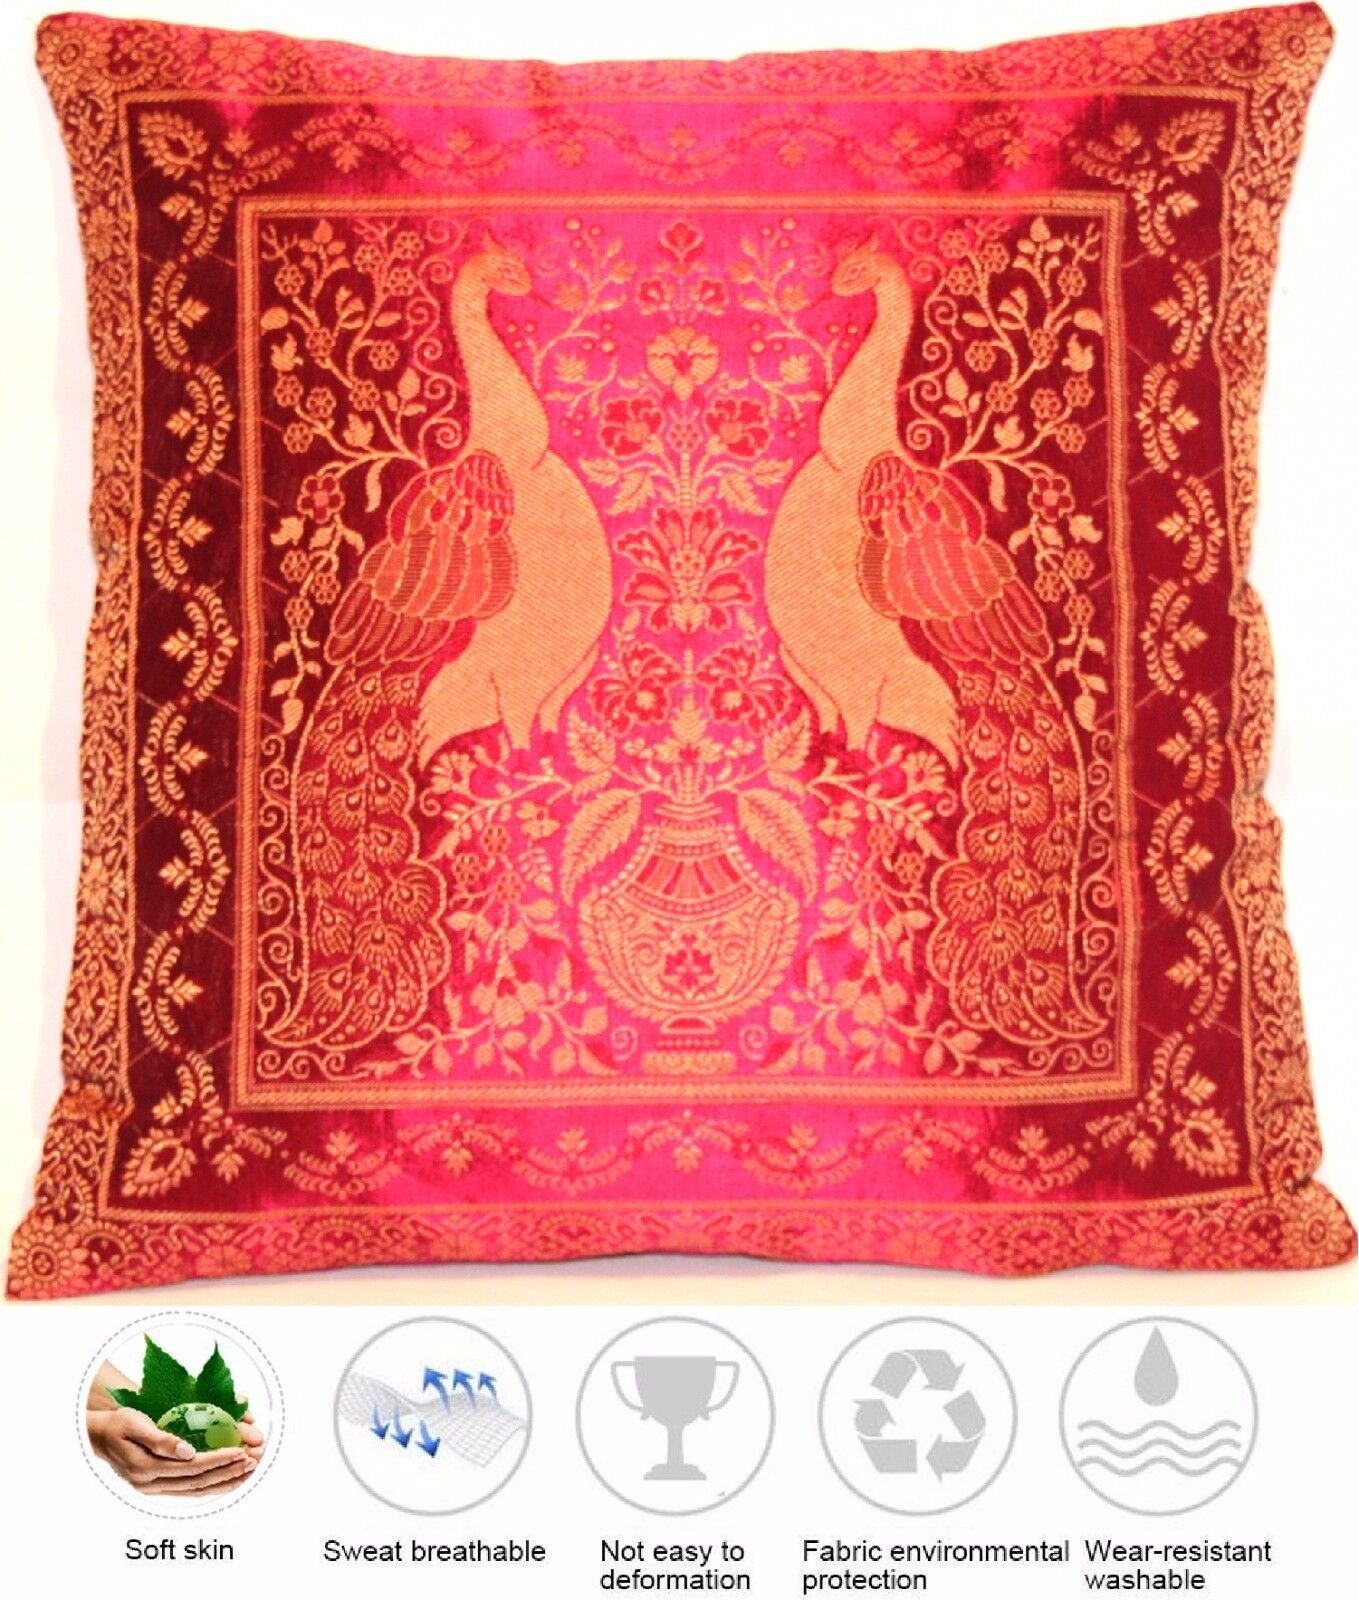 40cmx40cm, "Handgewebt - Indien" aus Seide Handgefertigt Banarasi Indische Dekokissen - Ruwado Handgenäht Kissenbezug und aus